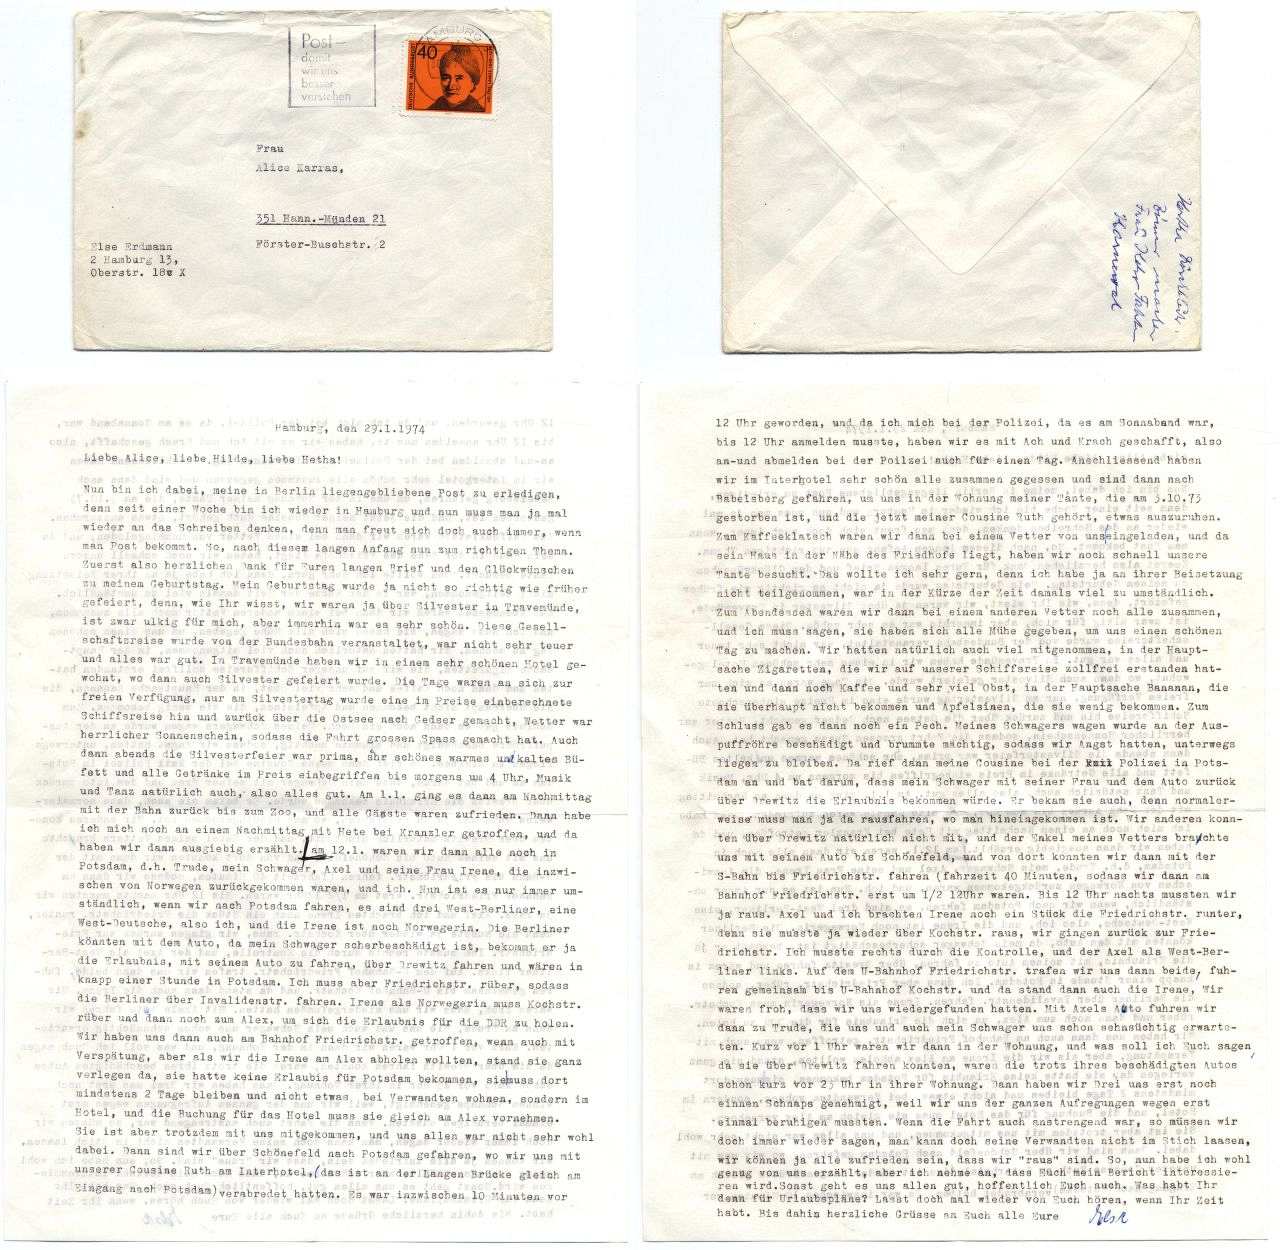 Zeitzeugin Else Erdmann schreibt in einem Brief von 1974 über die Aufregungen beim Grenzübergang bei einem Besuch in Berlin und Potsdam.